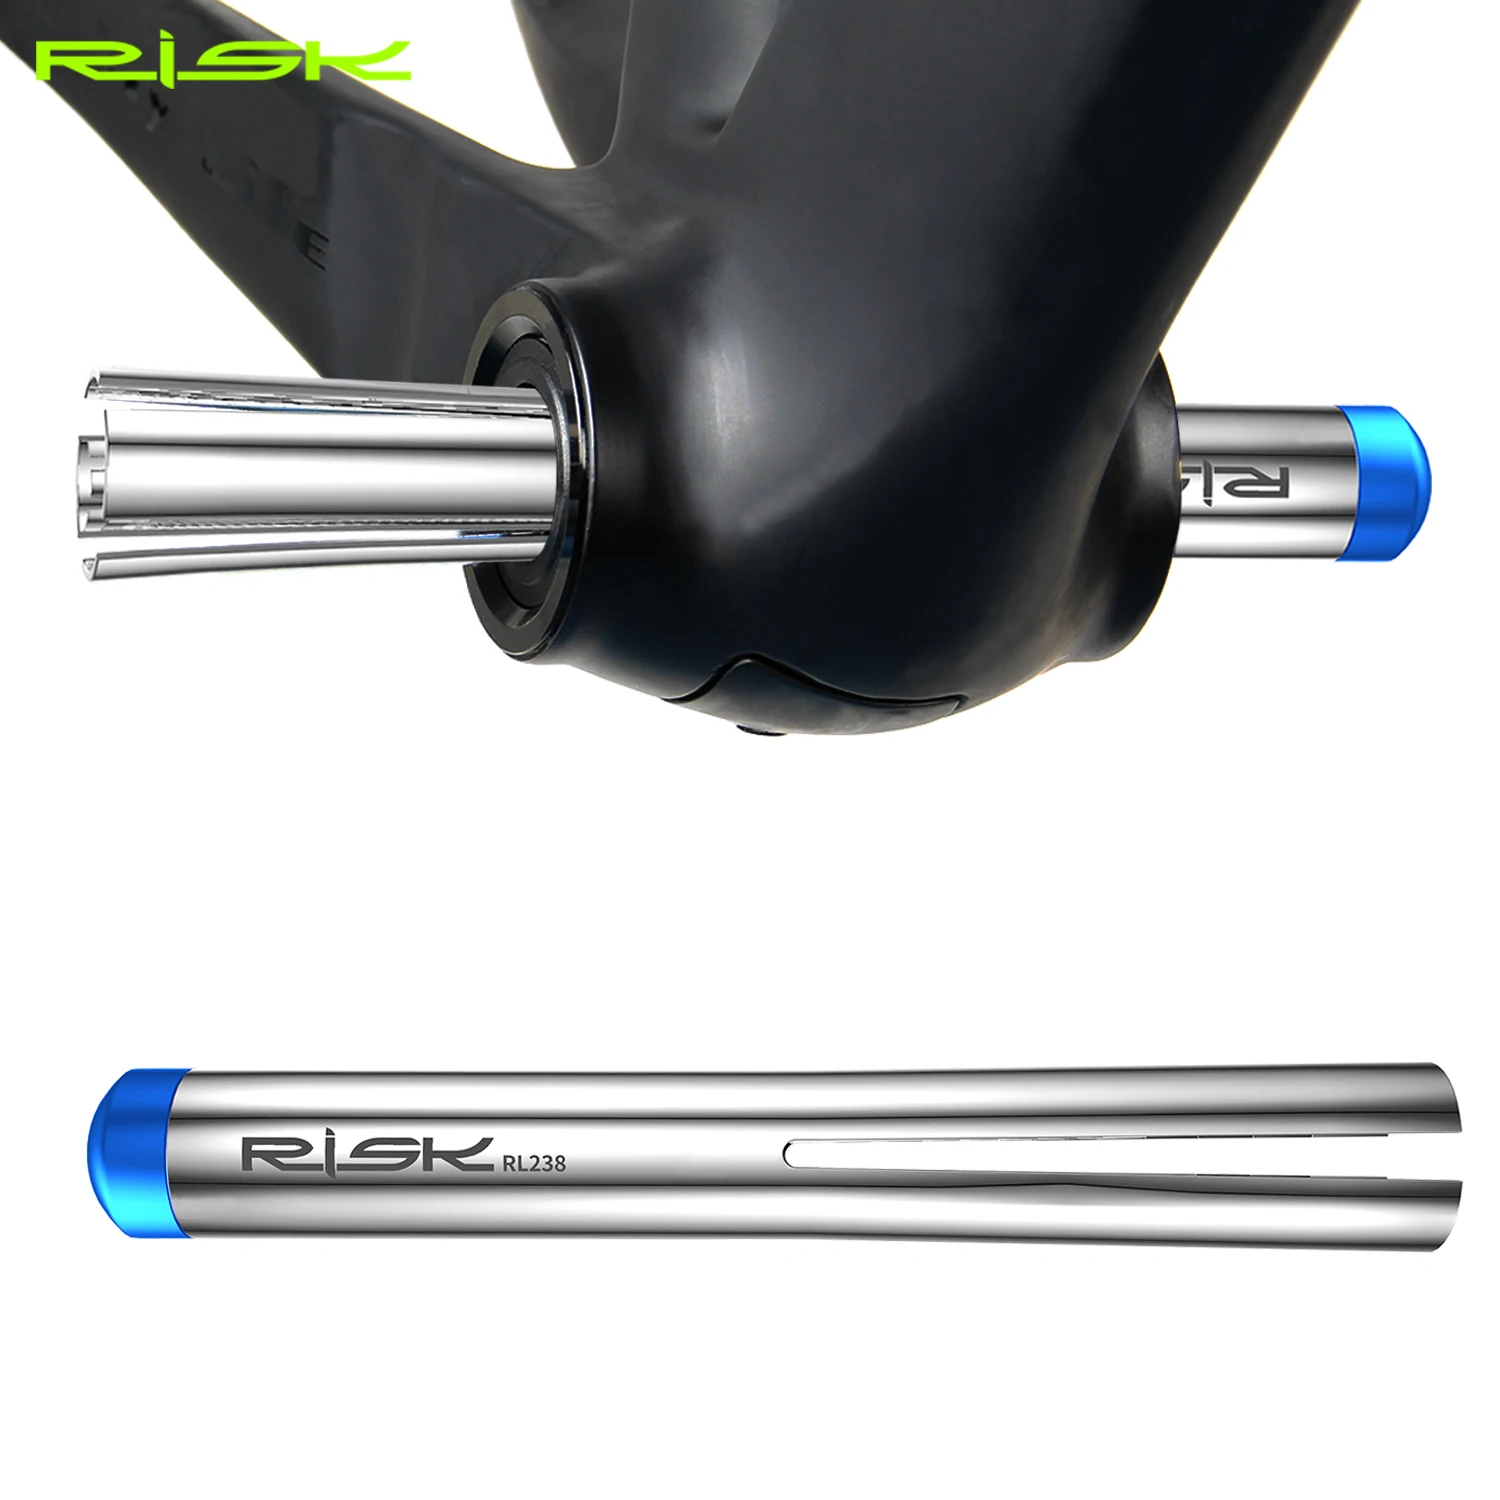 RISK RL238 bisiklet basın Fit rulman aynakol aracı bisiklet iskeleti alt aks temizleme aracı 16cm yükseklik için BB86 PF30 BB92 aynakol